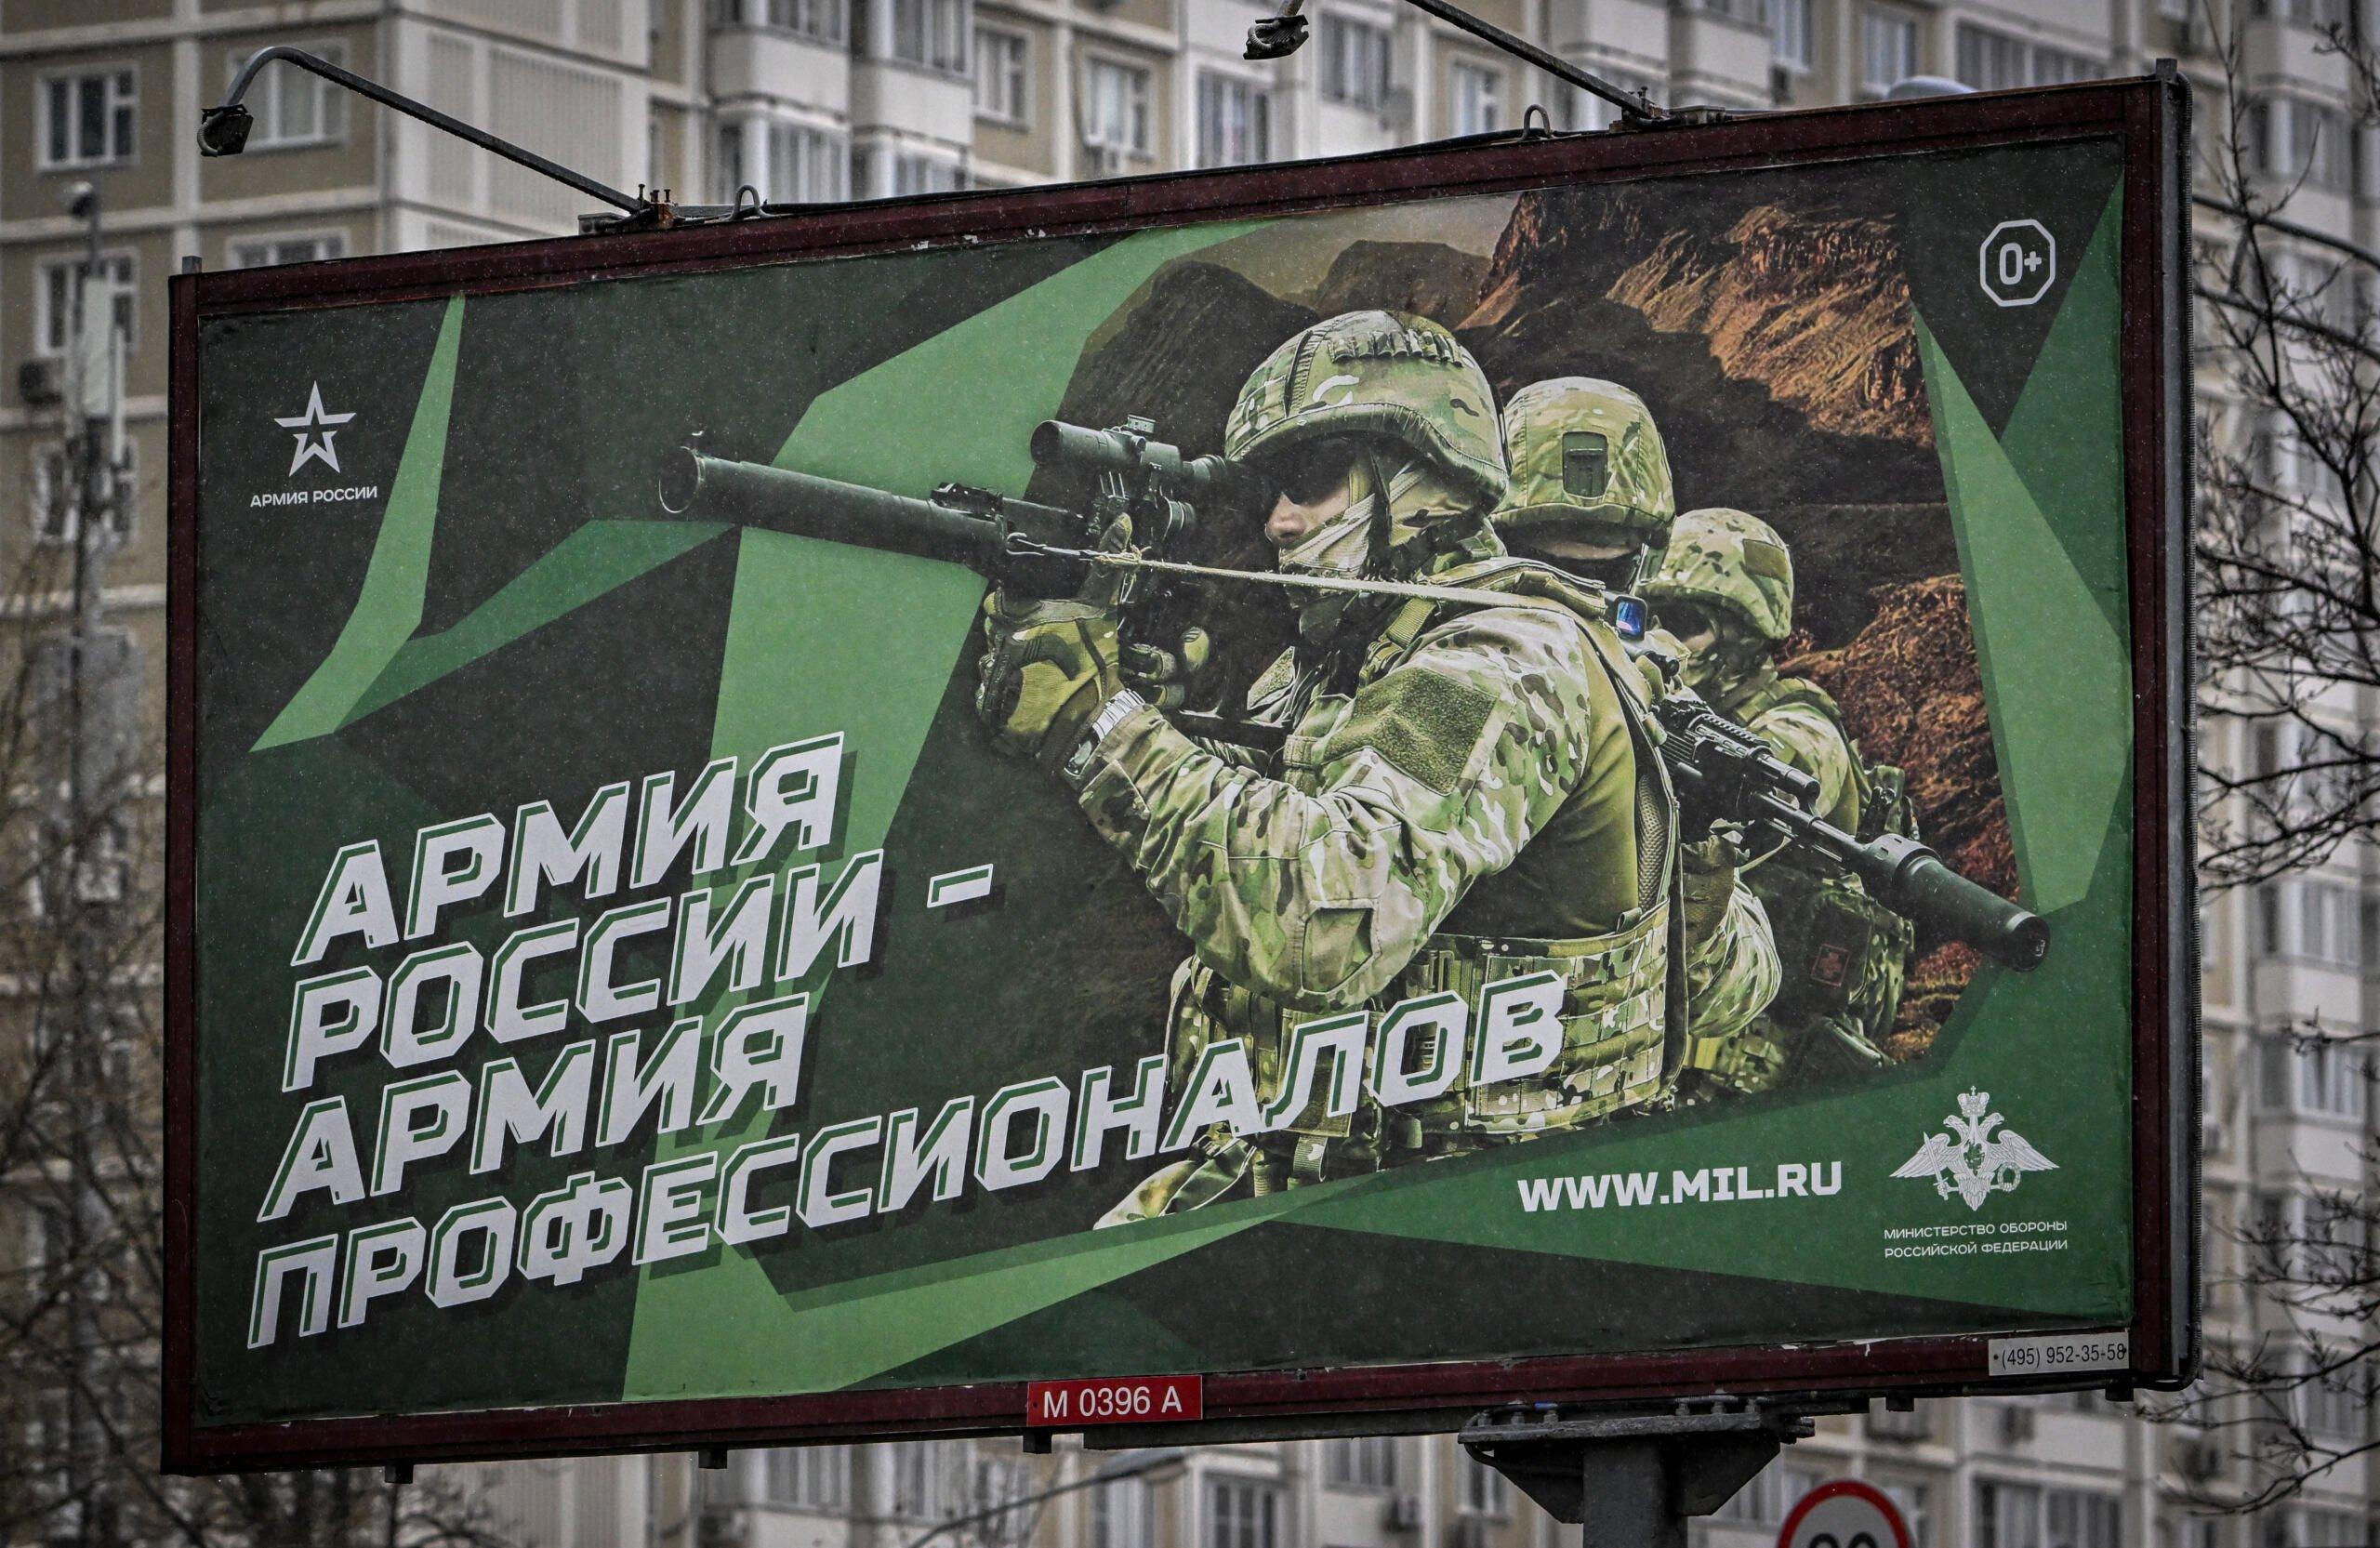 Fotografia wykonana 24 października 2022 roku przedstawia plakat przedstawiający rosyjskich żołnierzy z hasłem o treści "Armia Rosji - Armia profesjonalistów" zdobiący ulicę w Moskwie